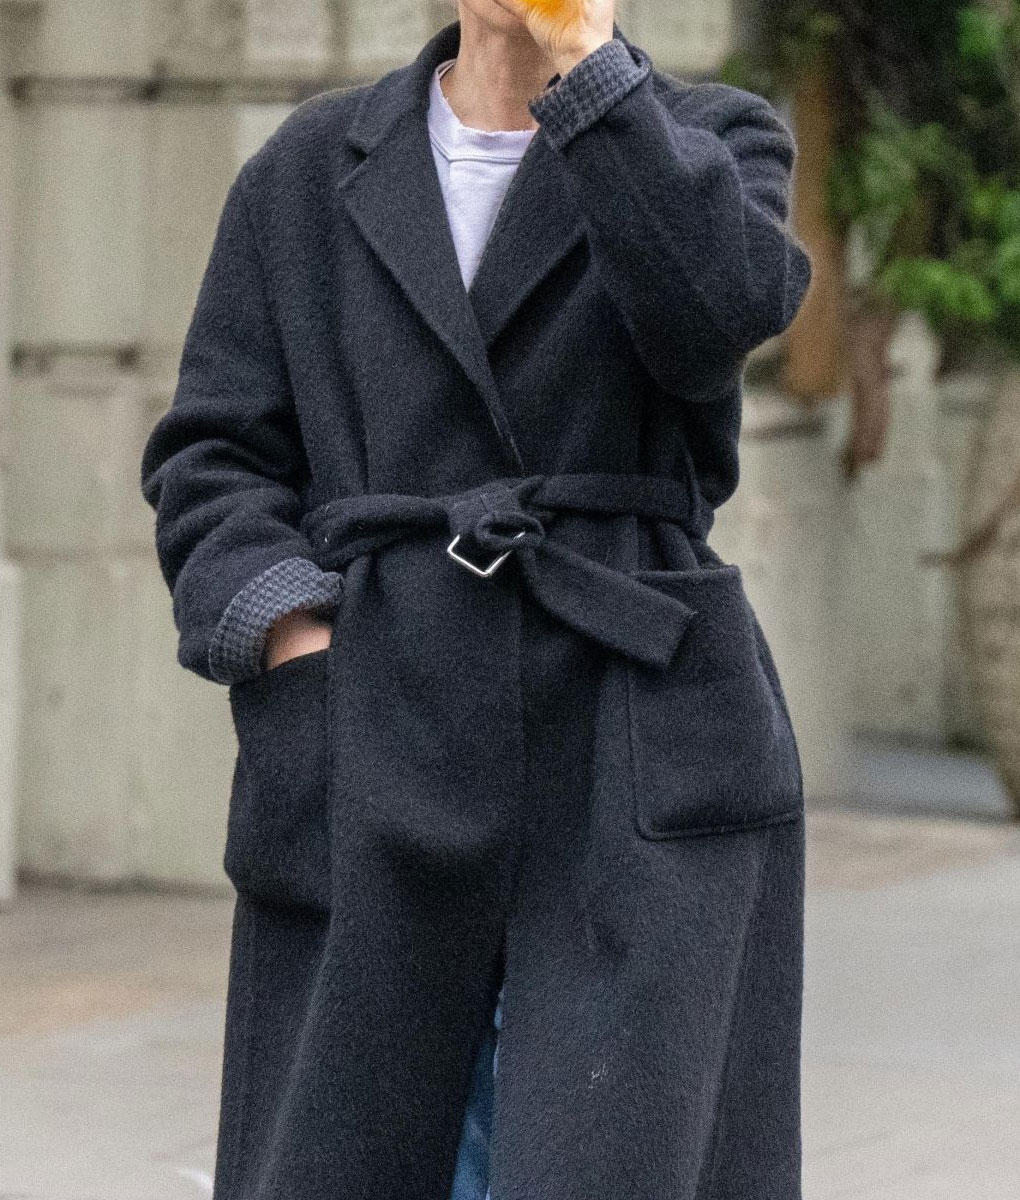 Natalie Portman Belted Black Coat (1)